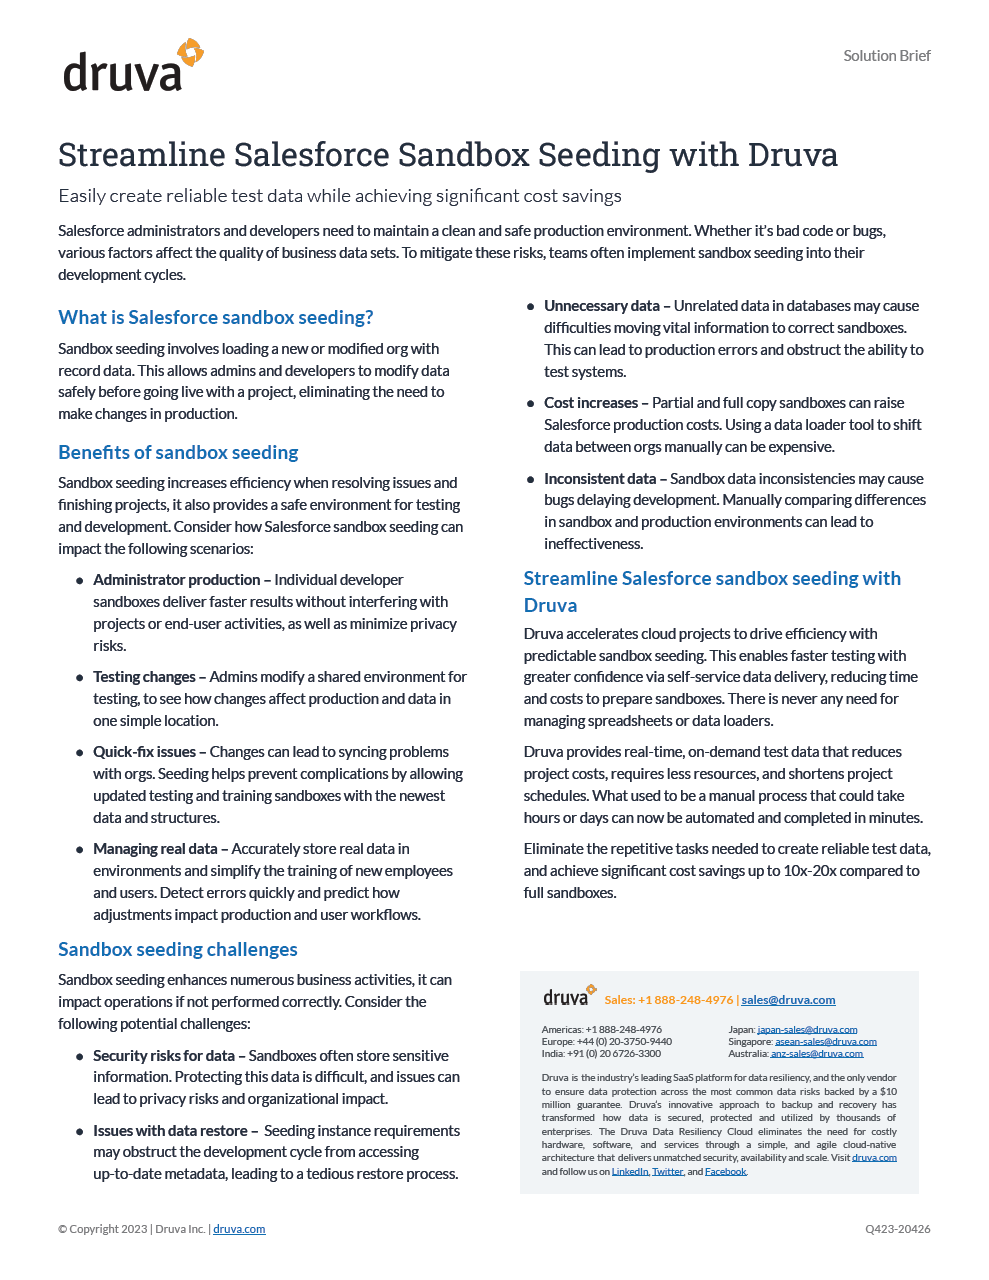 Streamline Salesforce Sandbox Seeding with Druva